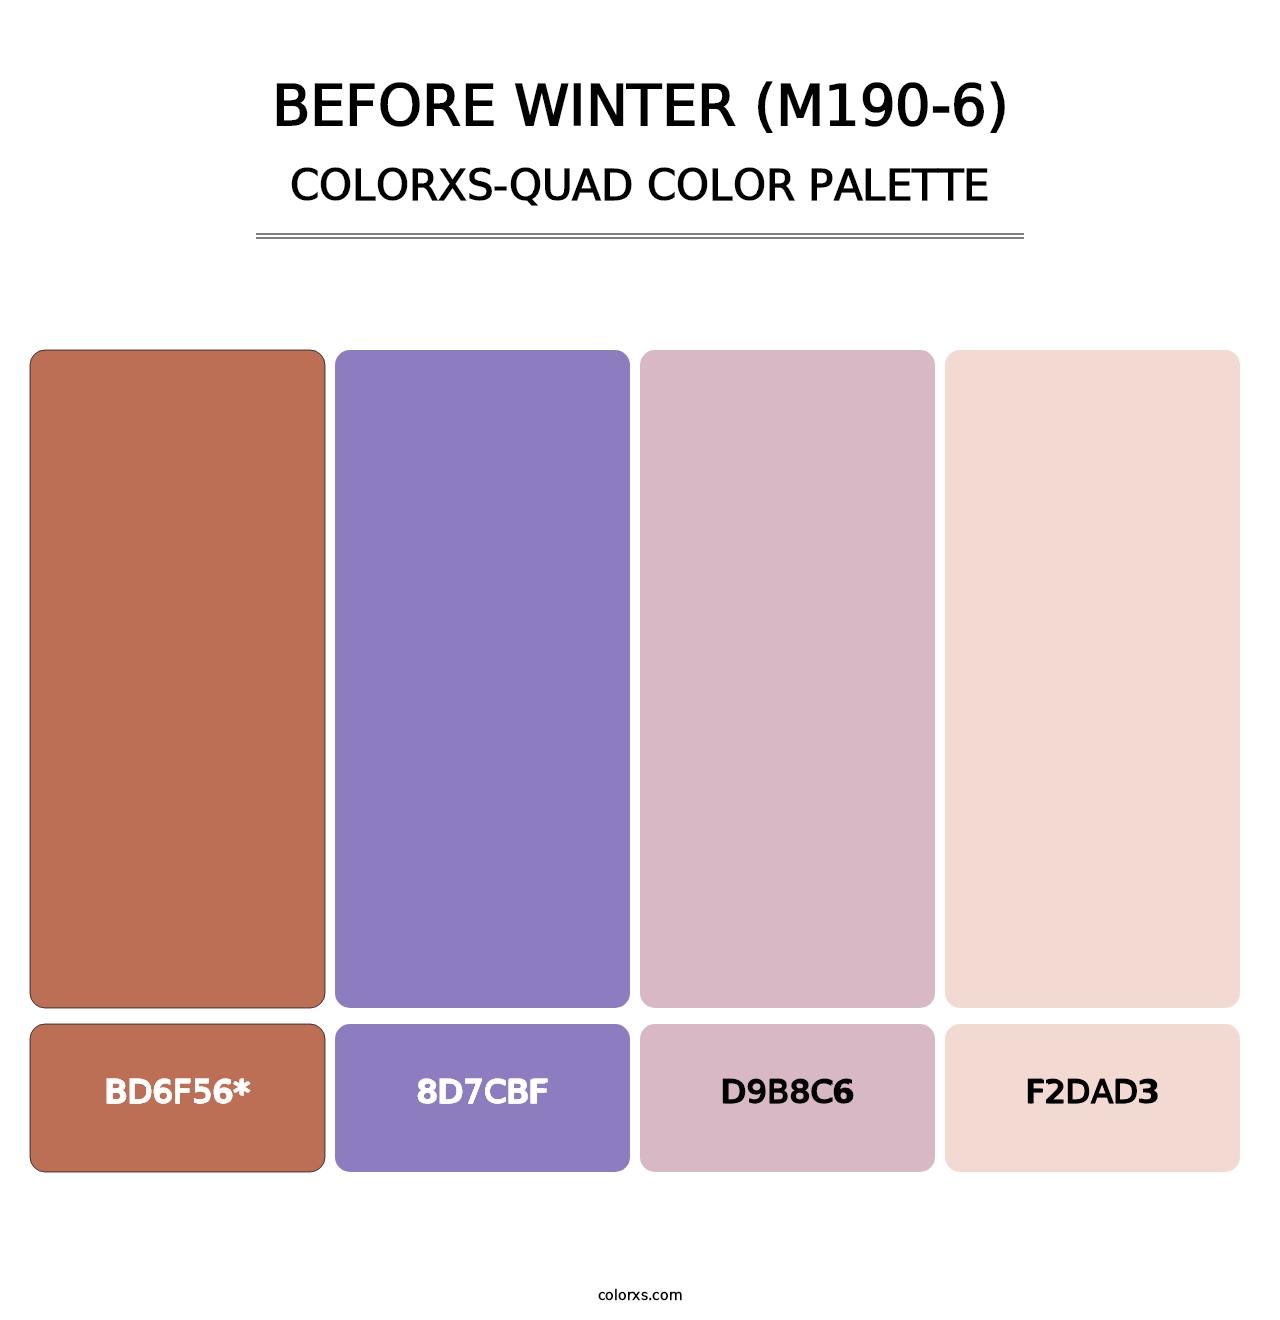 Before Winter (M190-6) - Colorxs Quad Palette